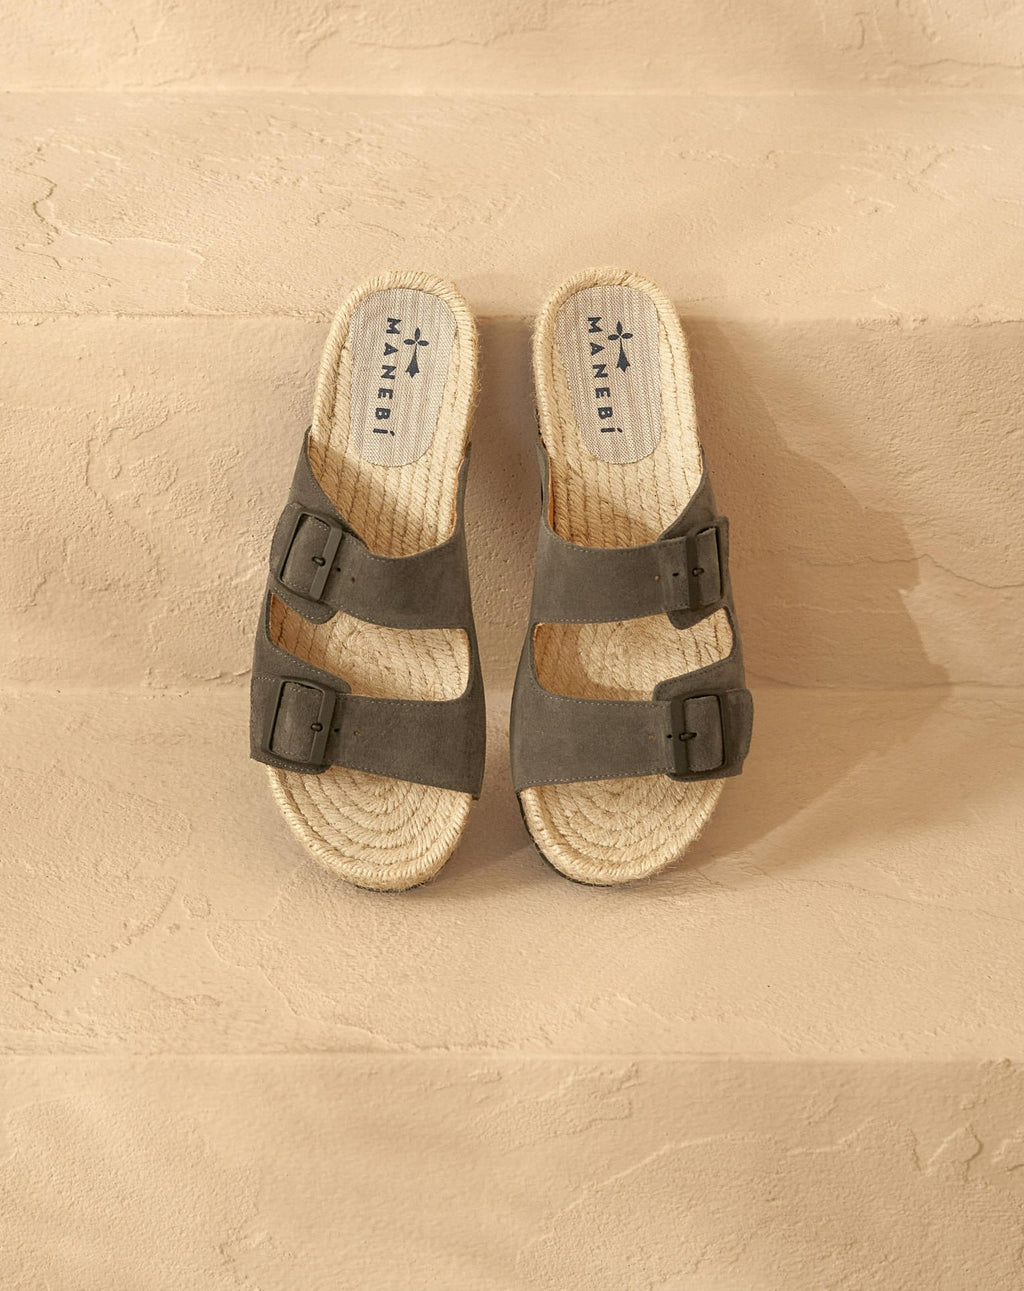 Nordic Sandals - Hamptons - Carbon Grey